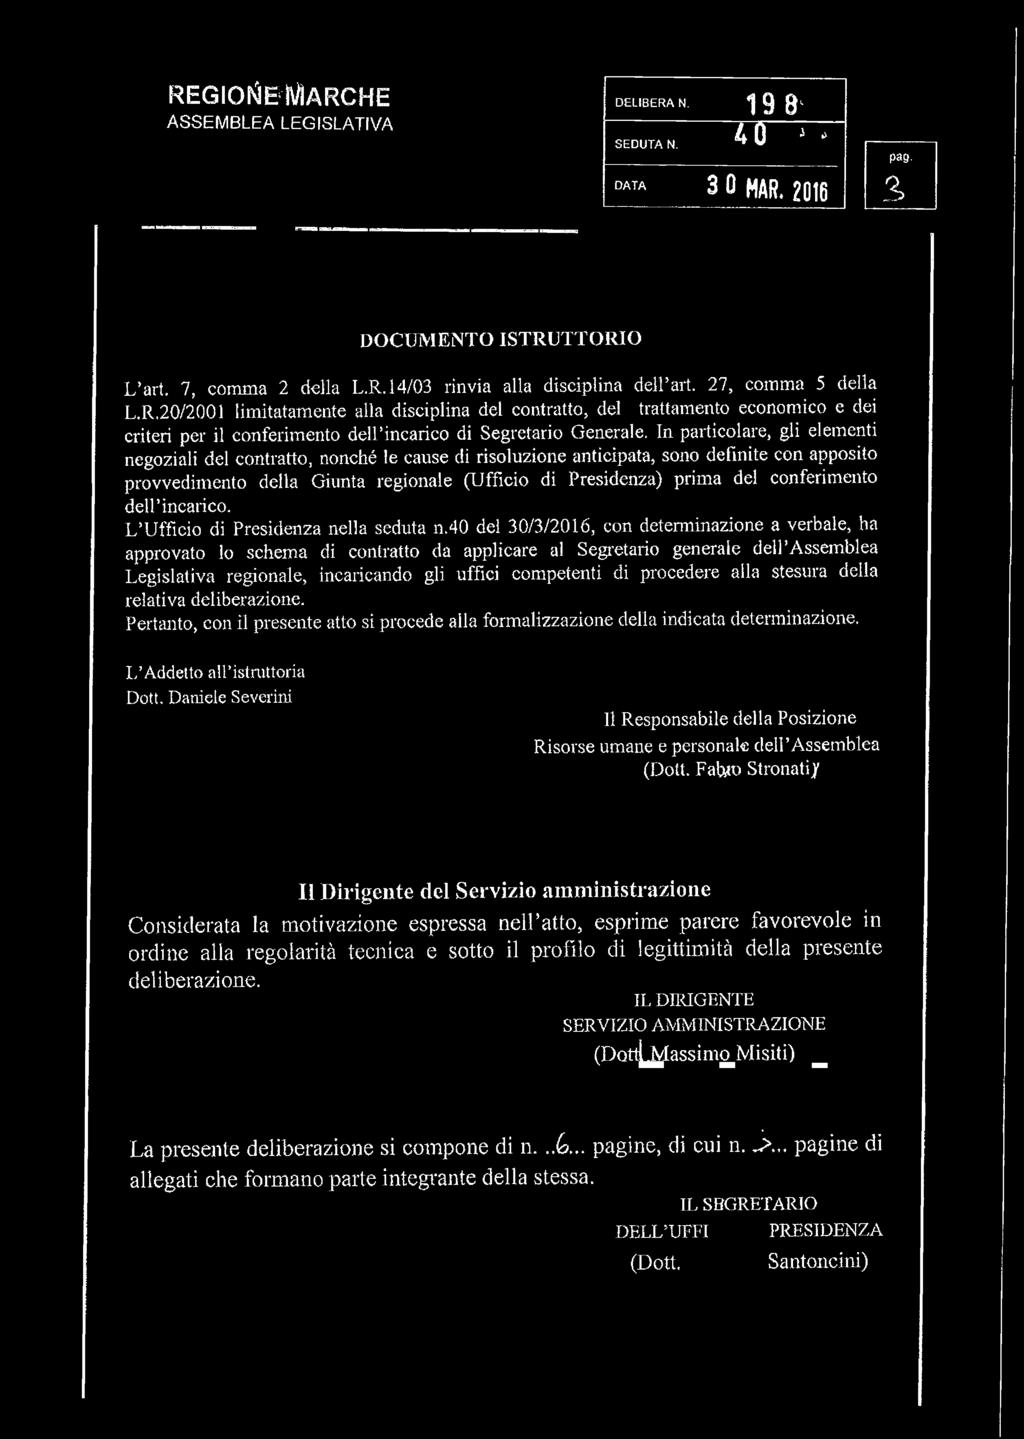 20/2001 limitatamente alla disciplina del contratto, del trattamento economico e dei criteri per il conferimento dell incarico